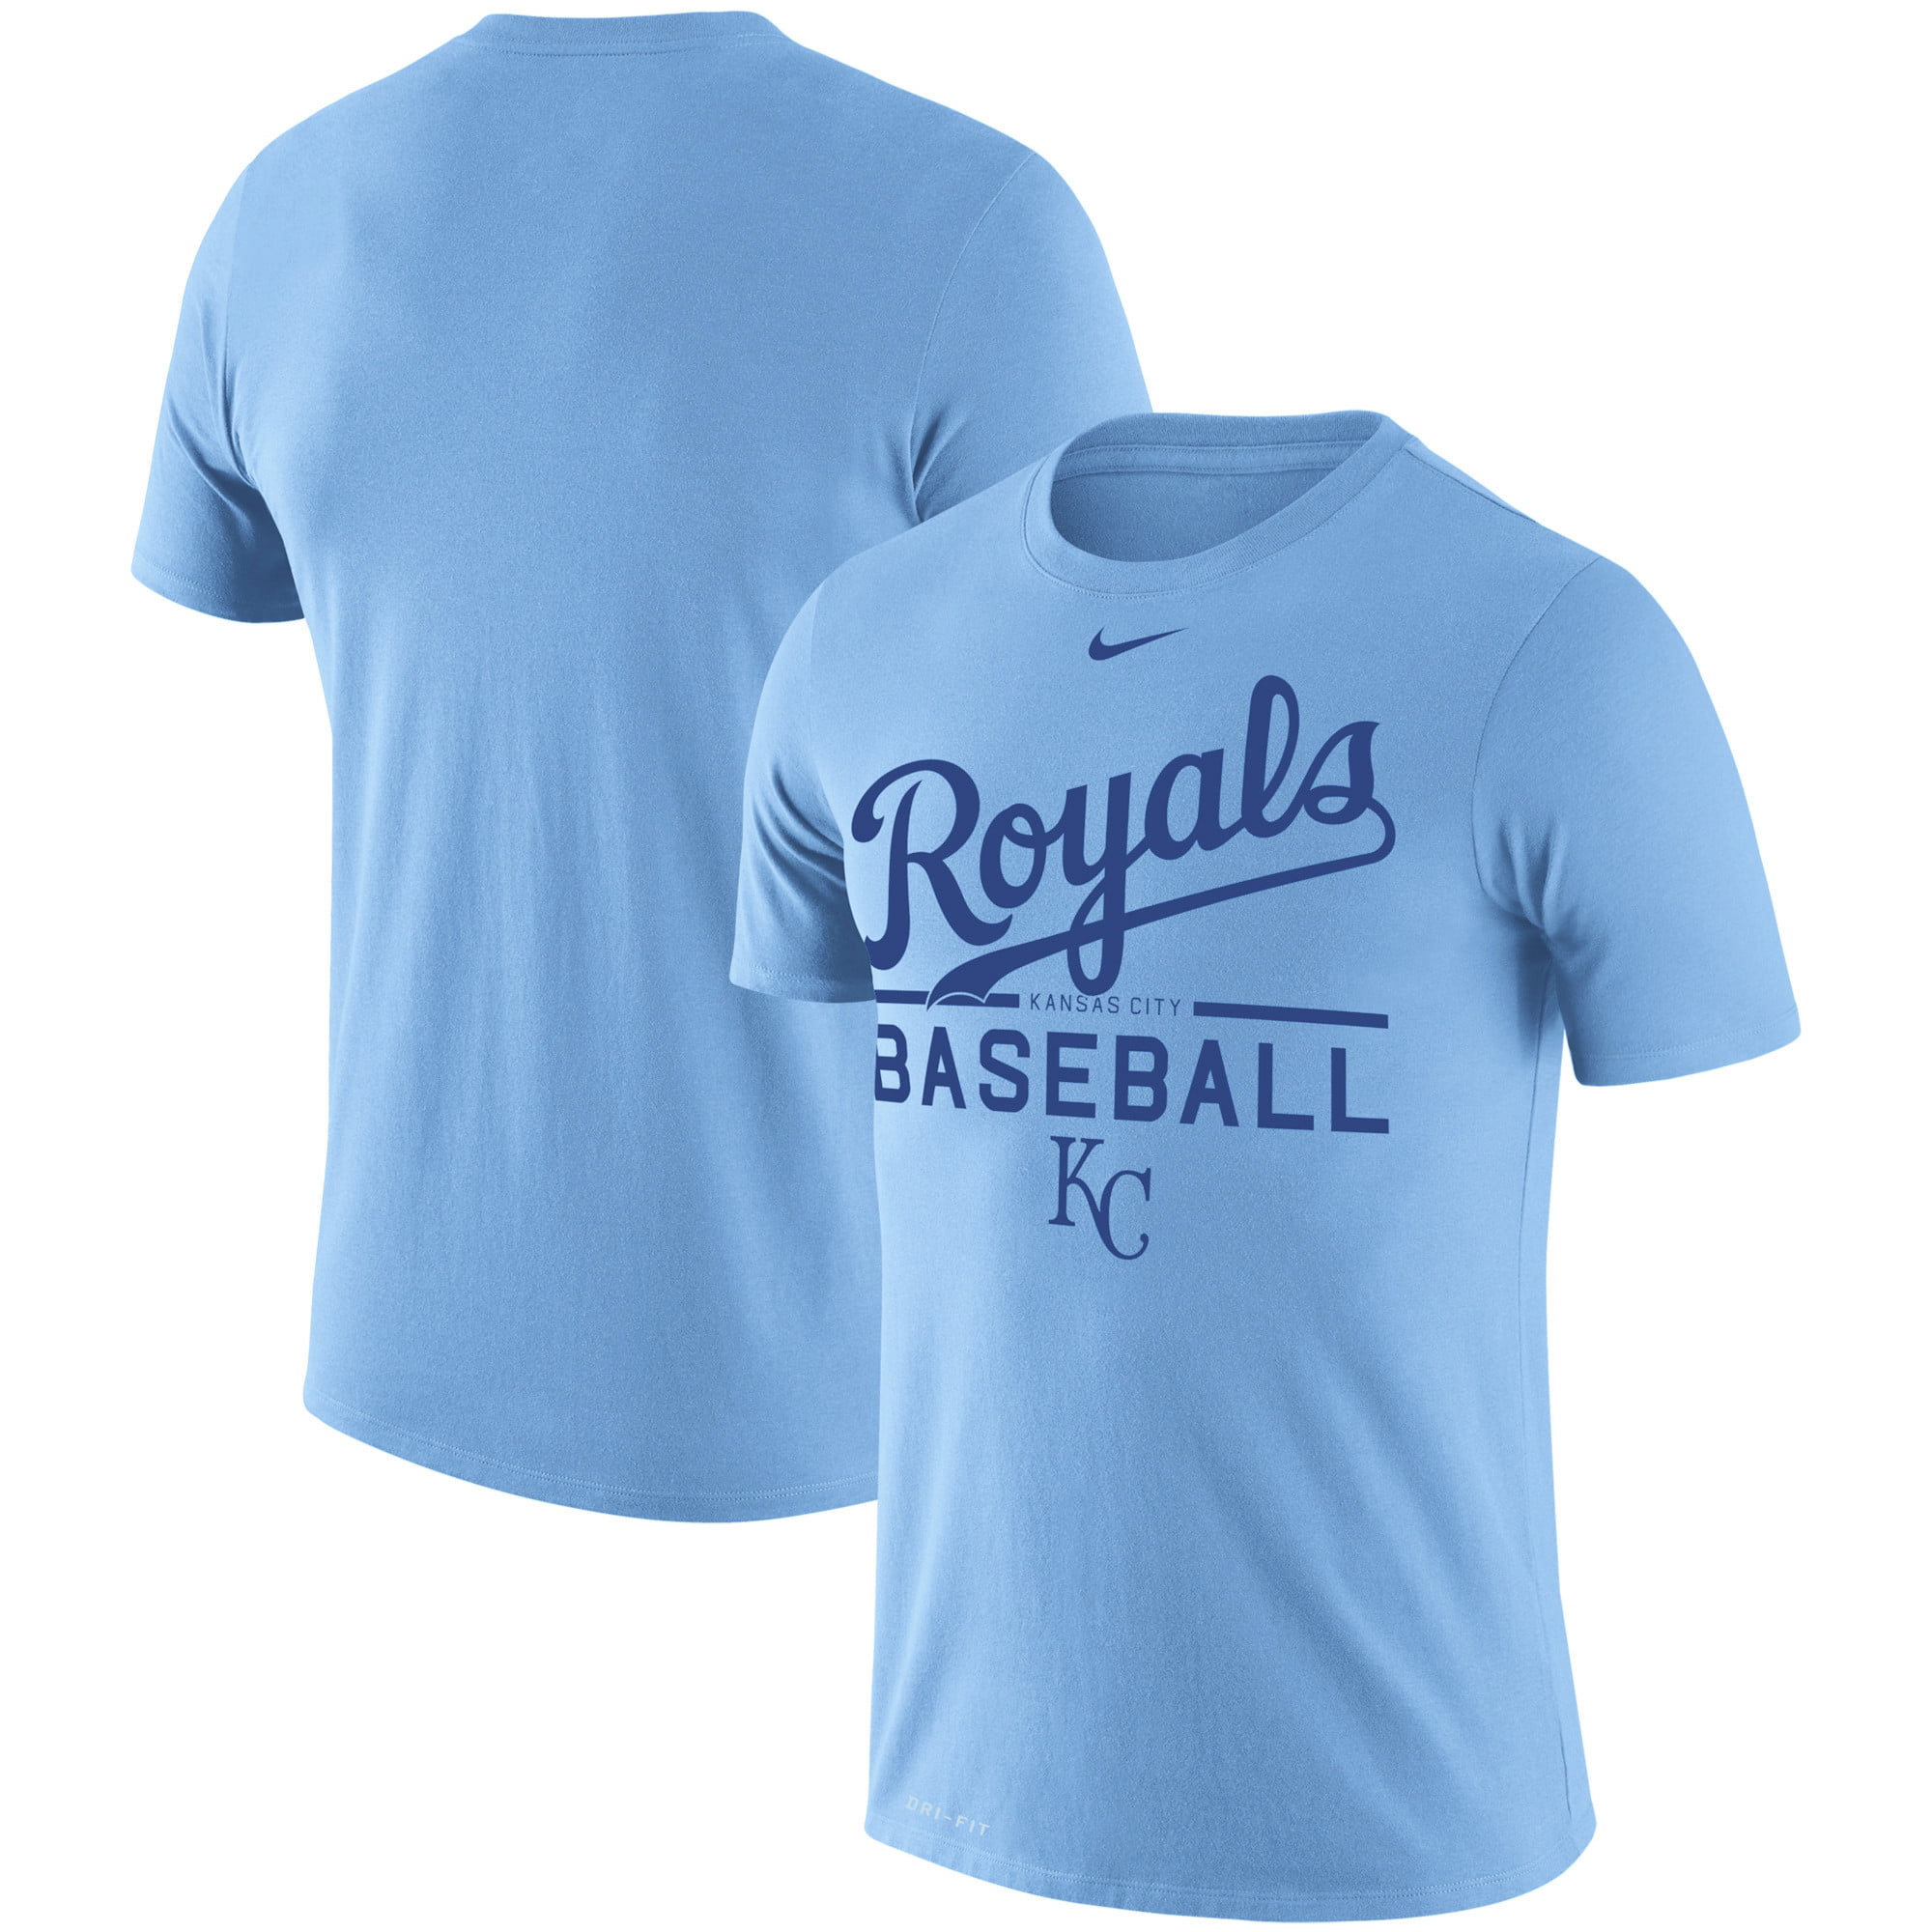 kansas city royals baseball shirt